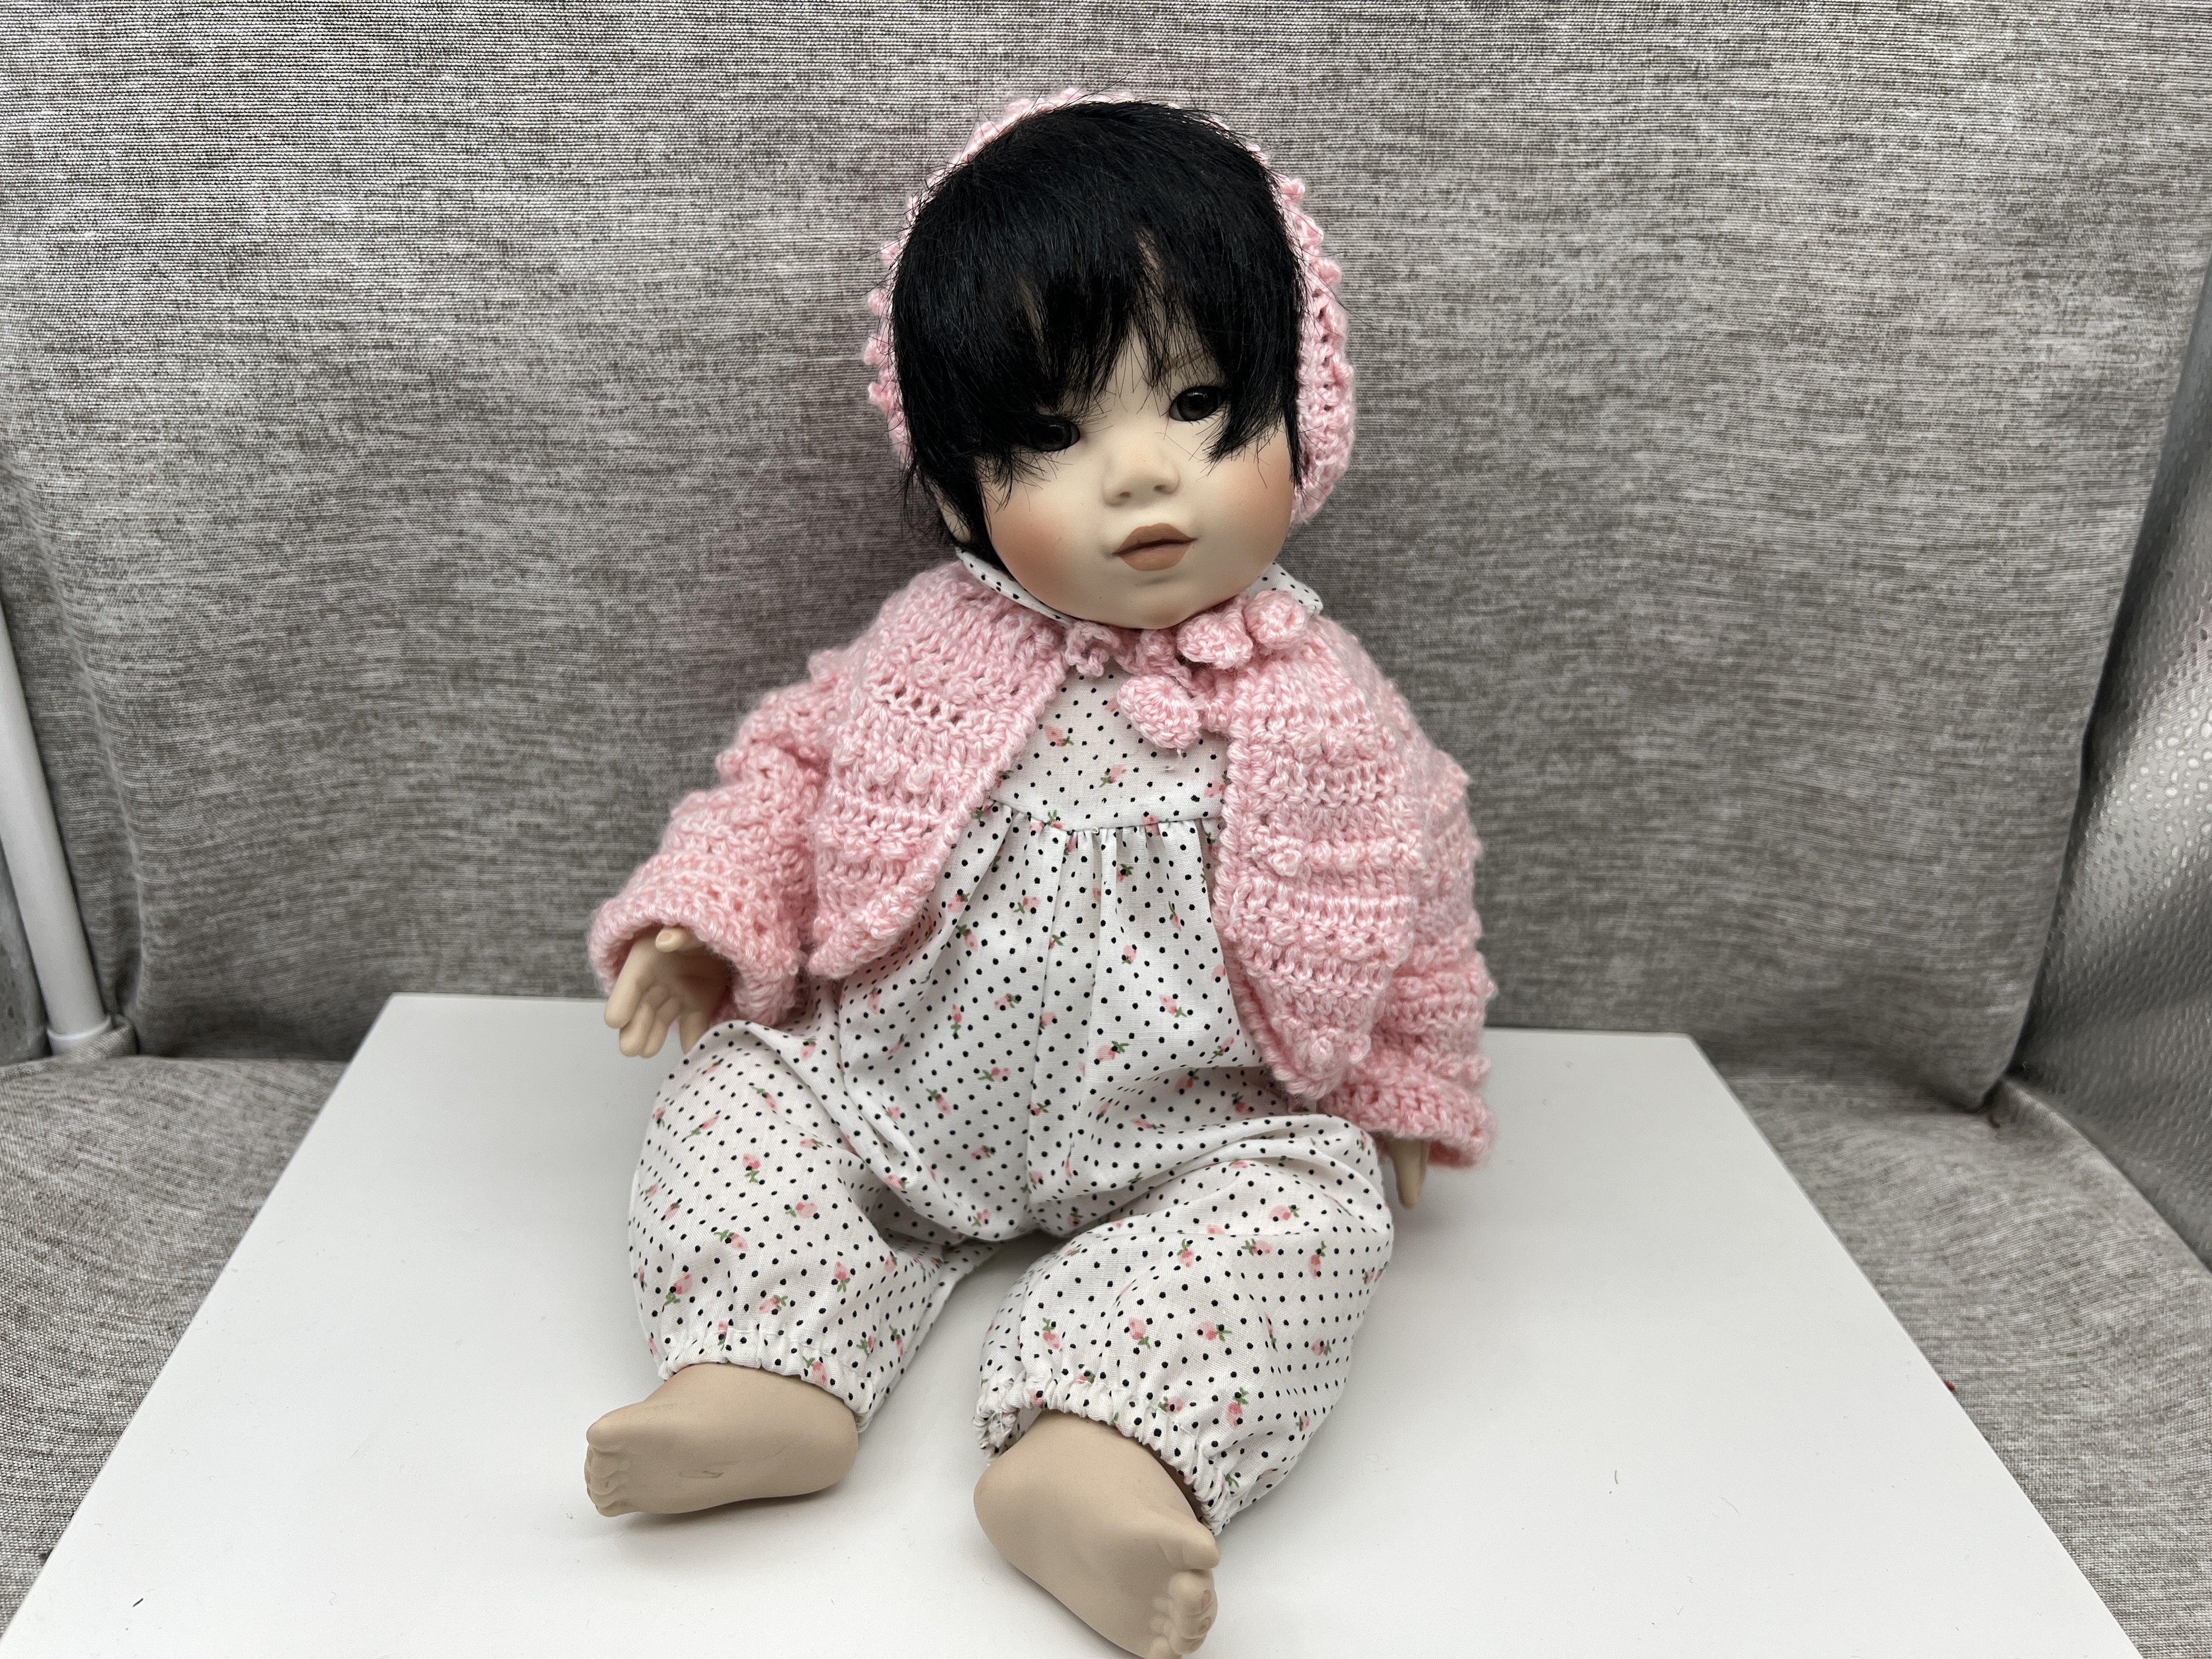 Jeanne Singer Porzellan Puppe 32 cm. Top Zustand 